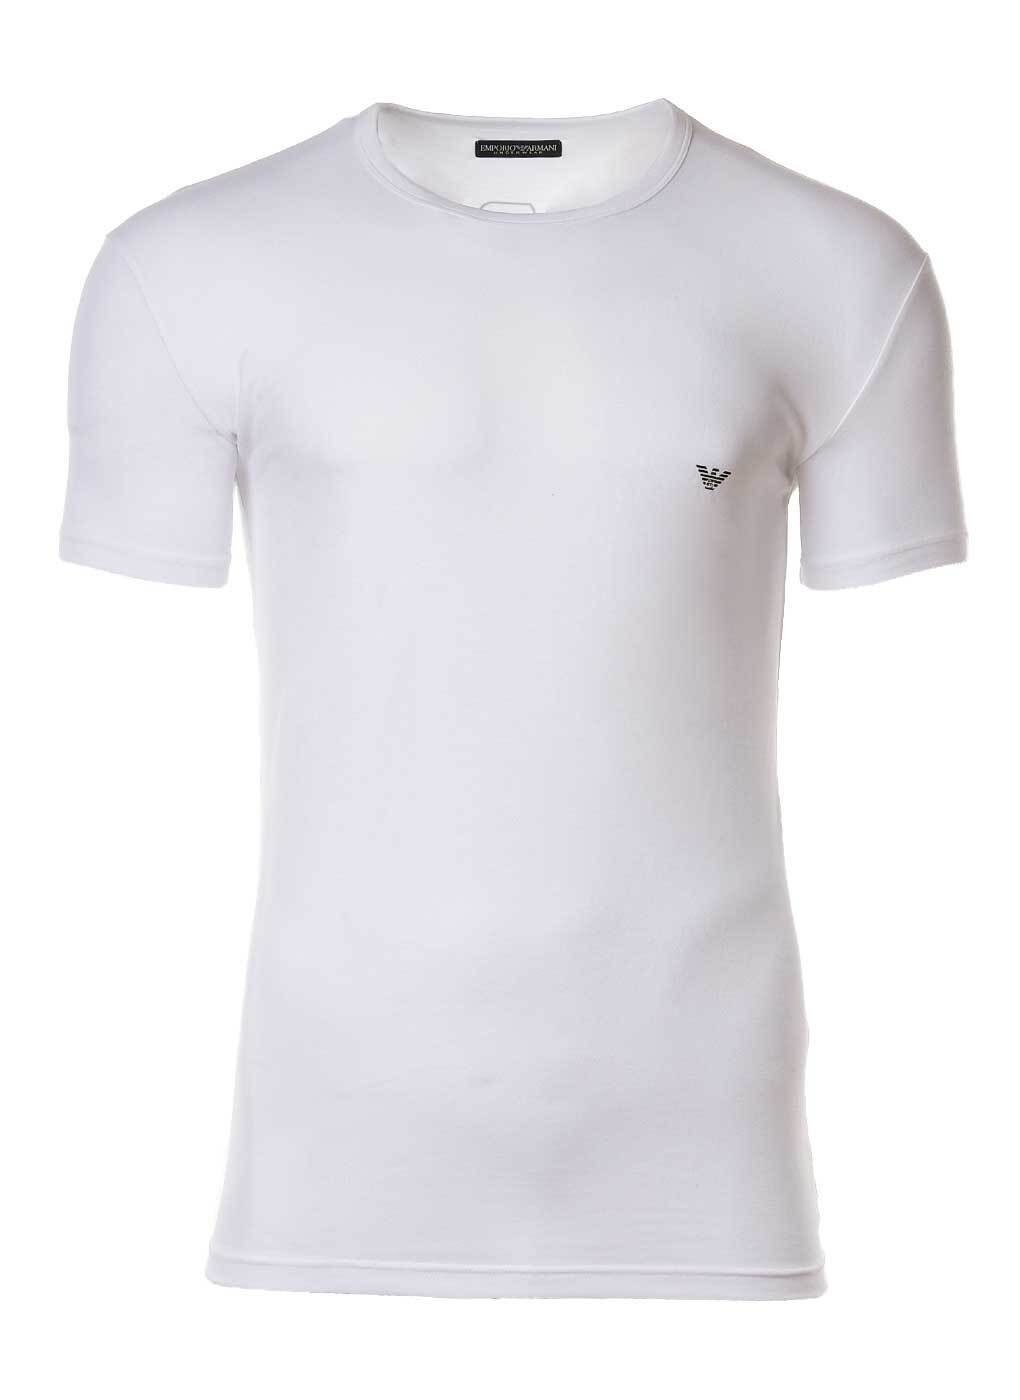 Emporio Armani T-Shirt Herren T-Shirt - Rundhals, Shirt, Halbarm, mit